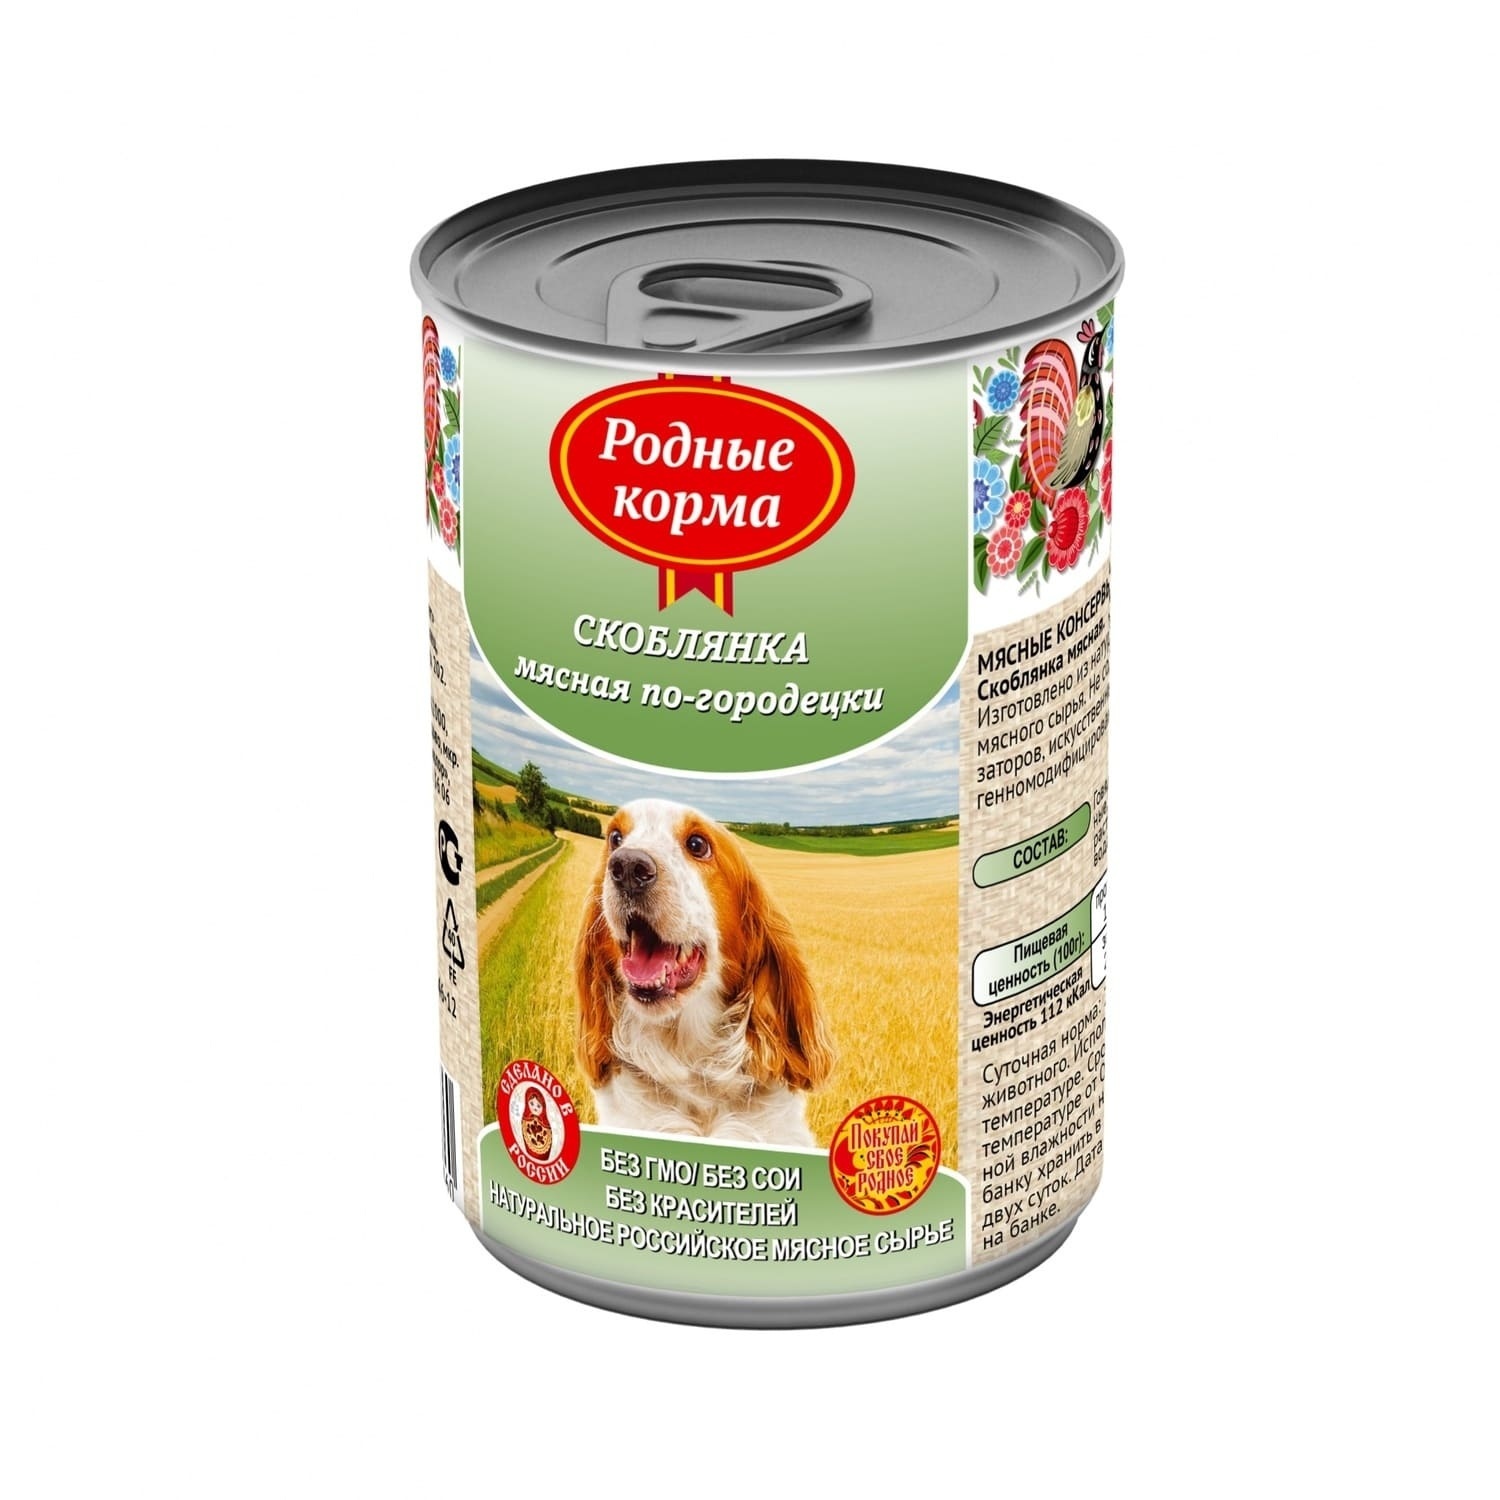 Родные корма Родные корма консервы для собак, скоблянка мясная по-городецки (970 г) цена и фото